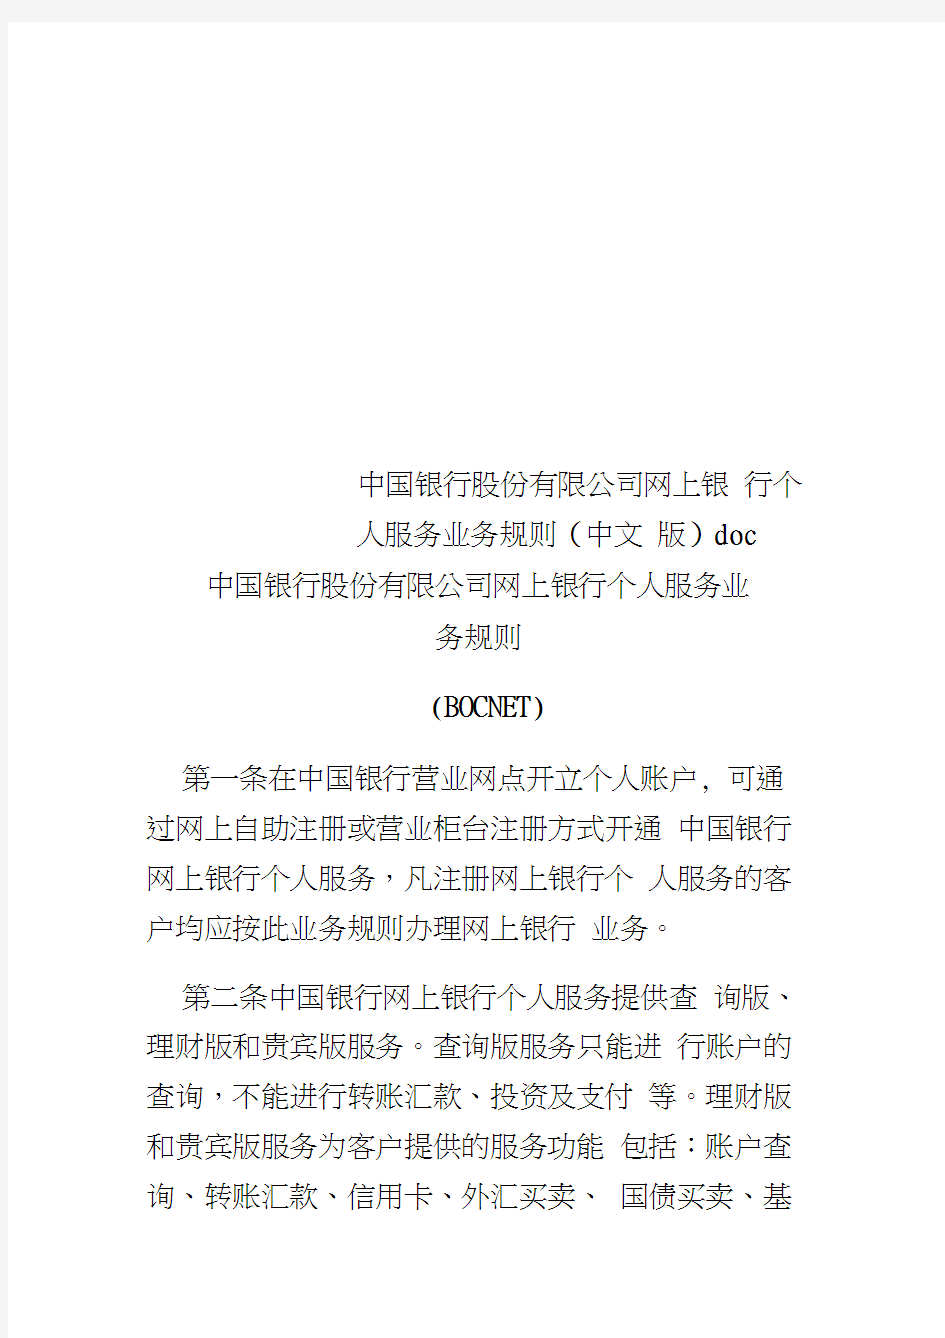 中国银行股份有限公司网上银行个人服务业务规则(中文版)doc